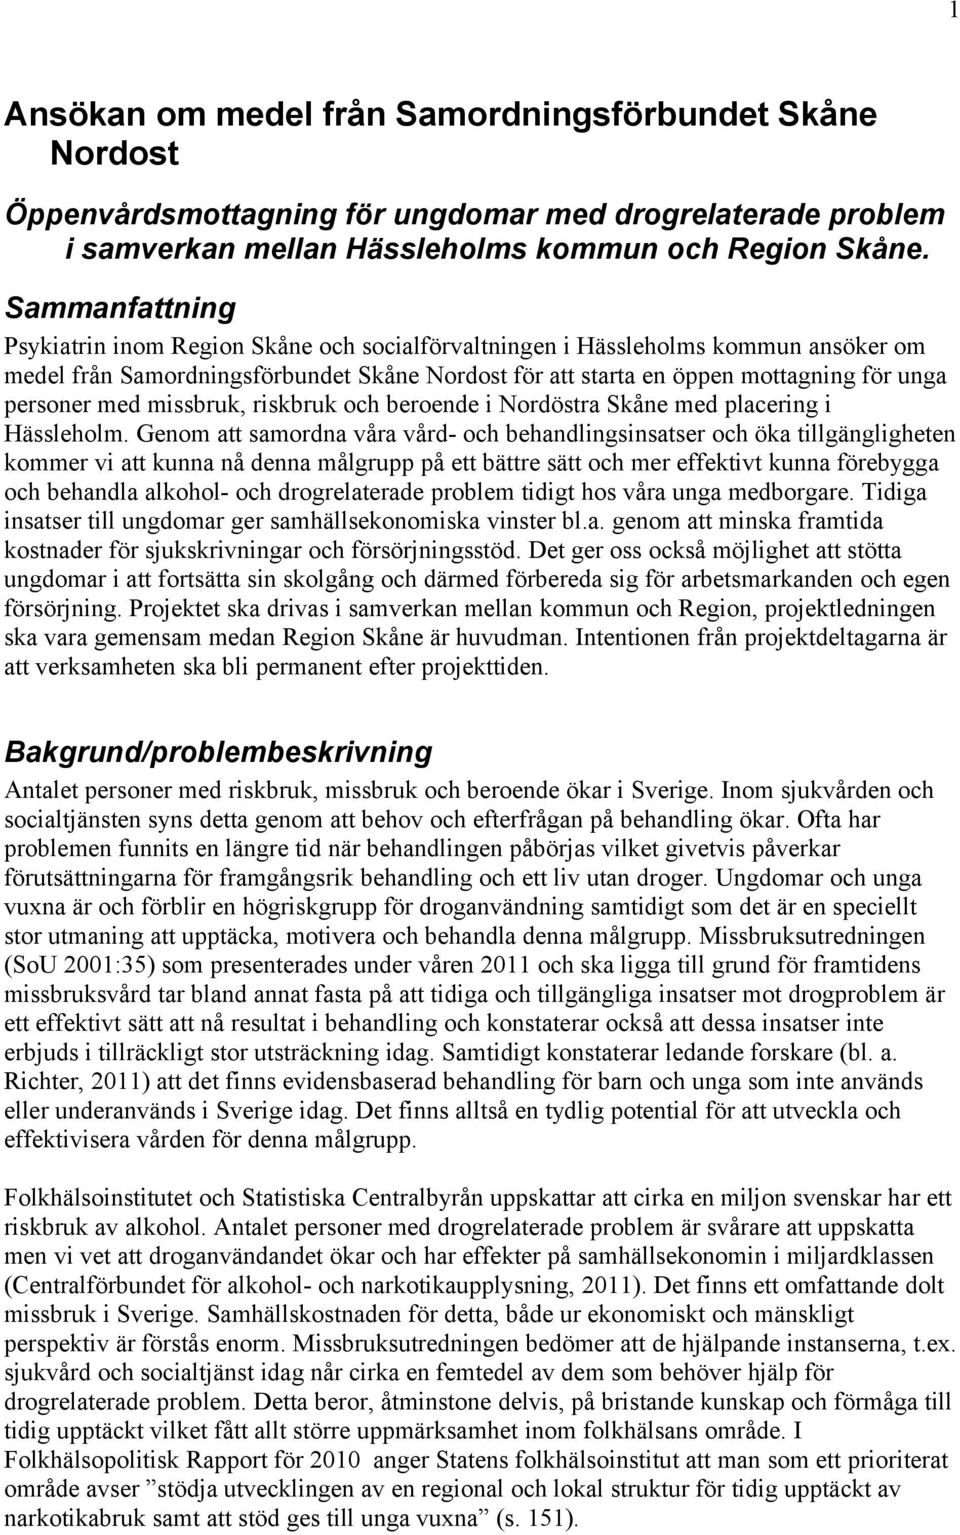 med missbruk, riskbruk och beroende i Nordöstra Skåne med placering i Hässleholm.